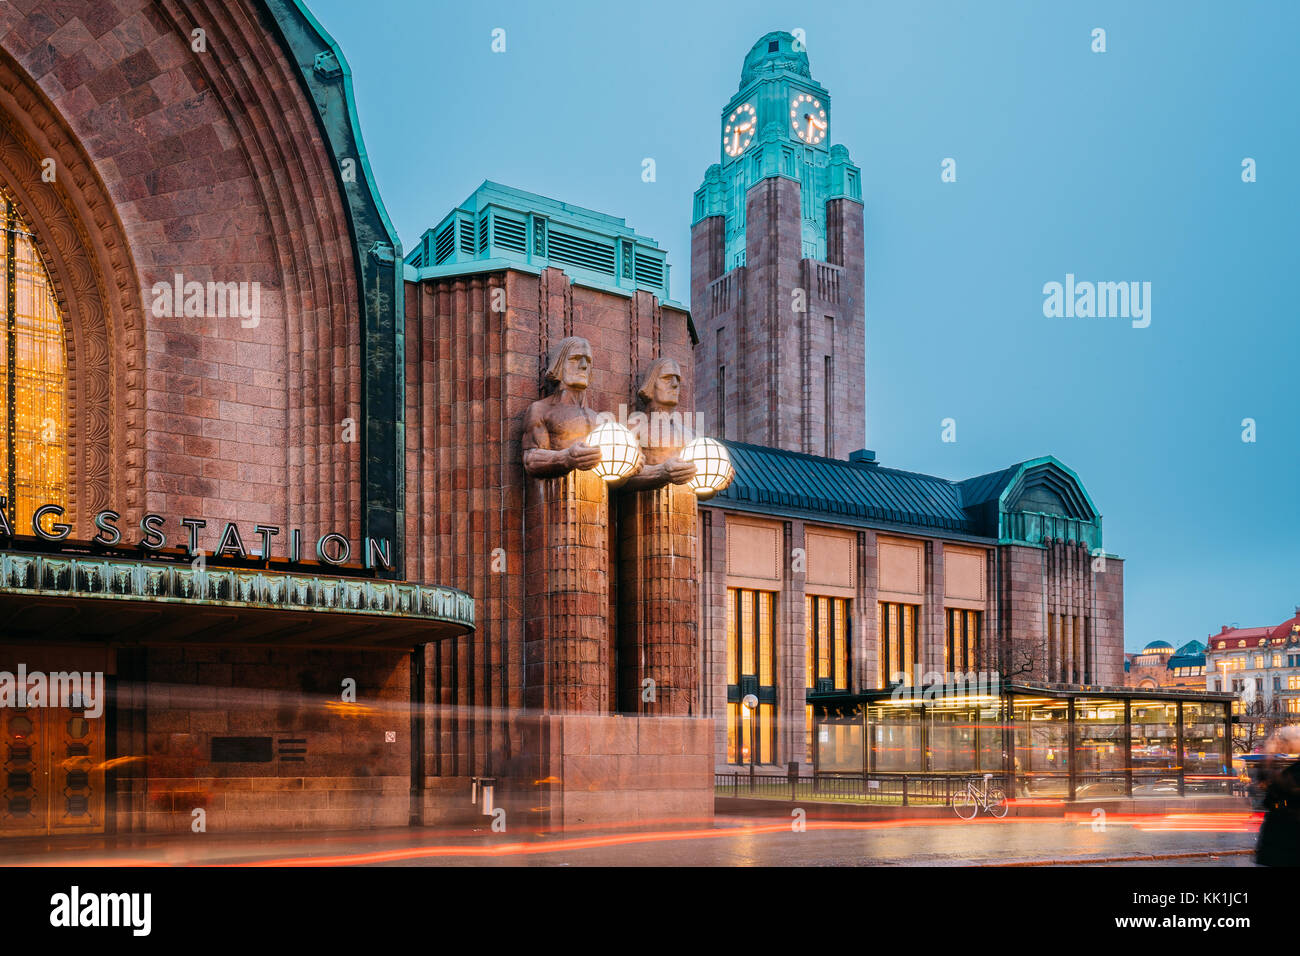 Helsinki, Finnland. Nacht Blick auf Statuen auf Eingang Hauptbahnhof Helsinki. am Abend oder in der Nacht die Beleuchtung. Stockfoto